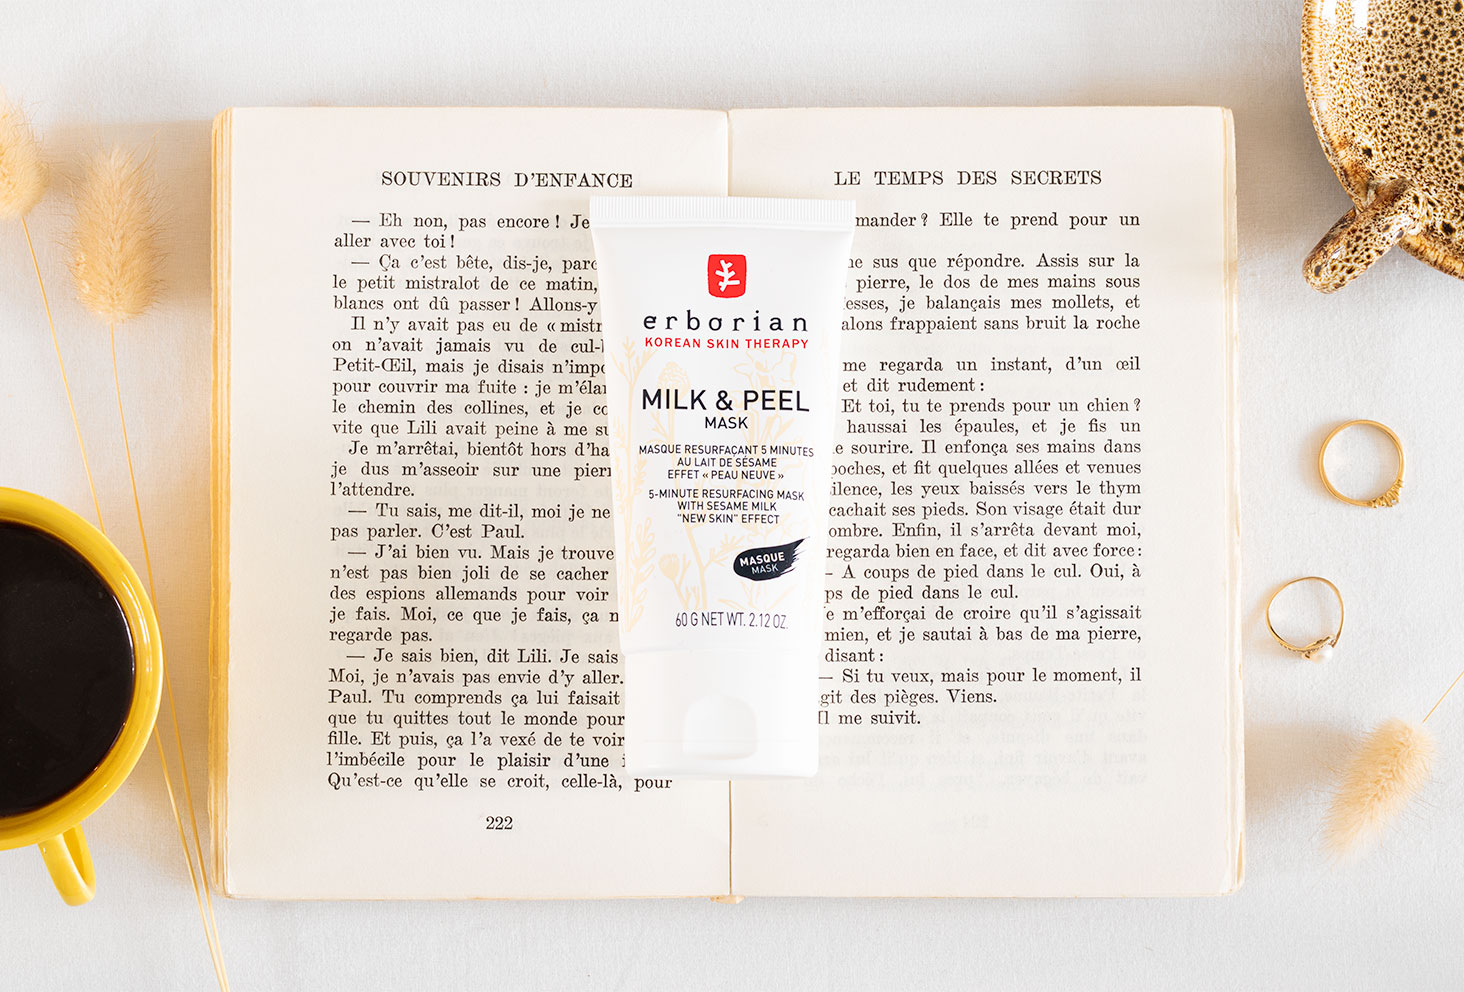 Zoom sur le Milk & Peel Mask de Erborian posé au milieu d'un livre ancien ouvert